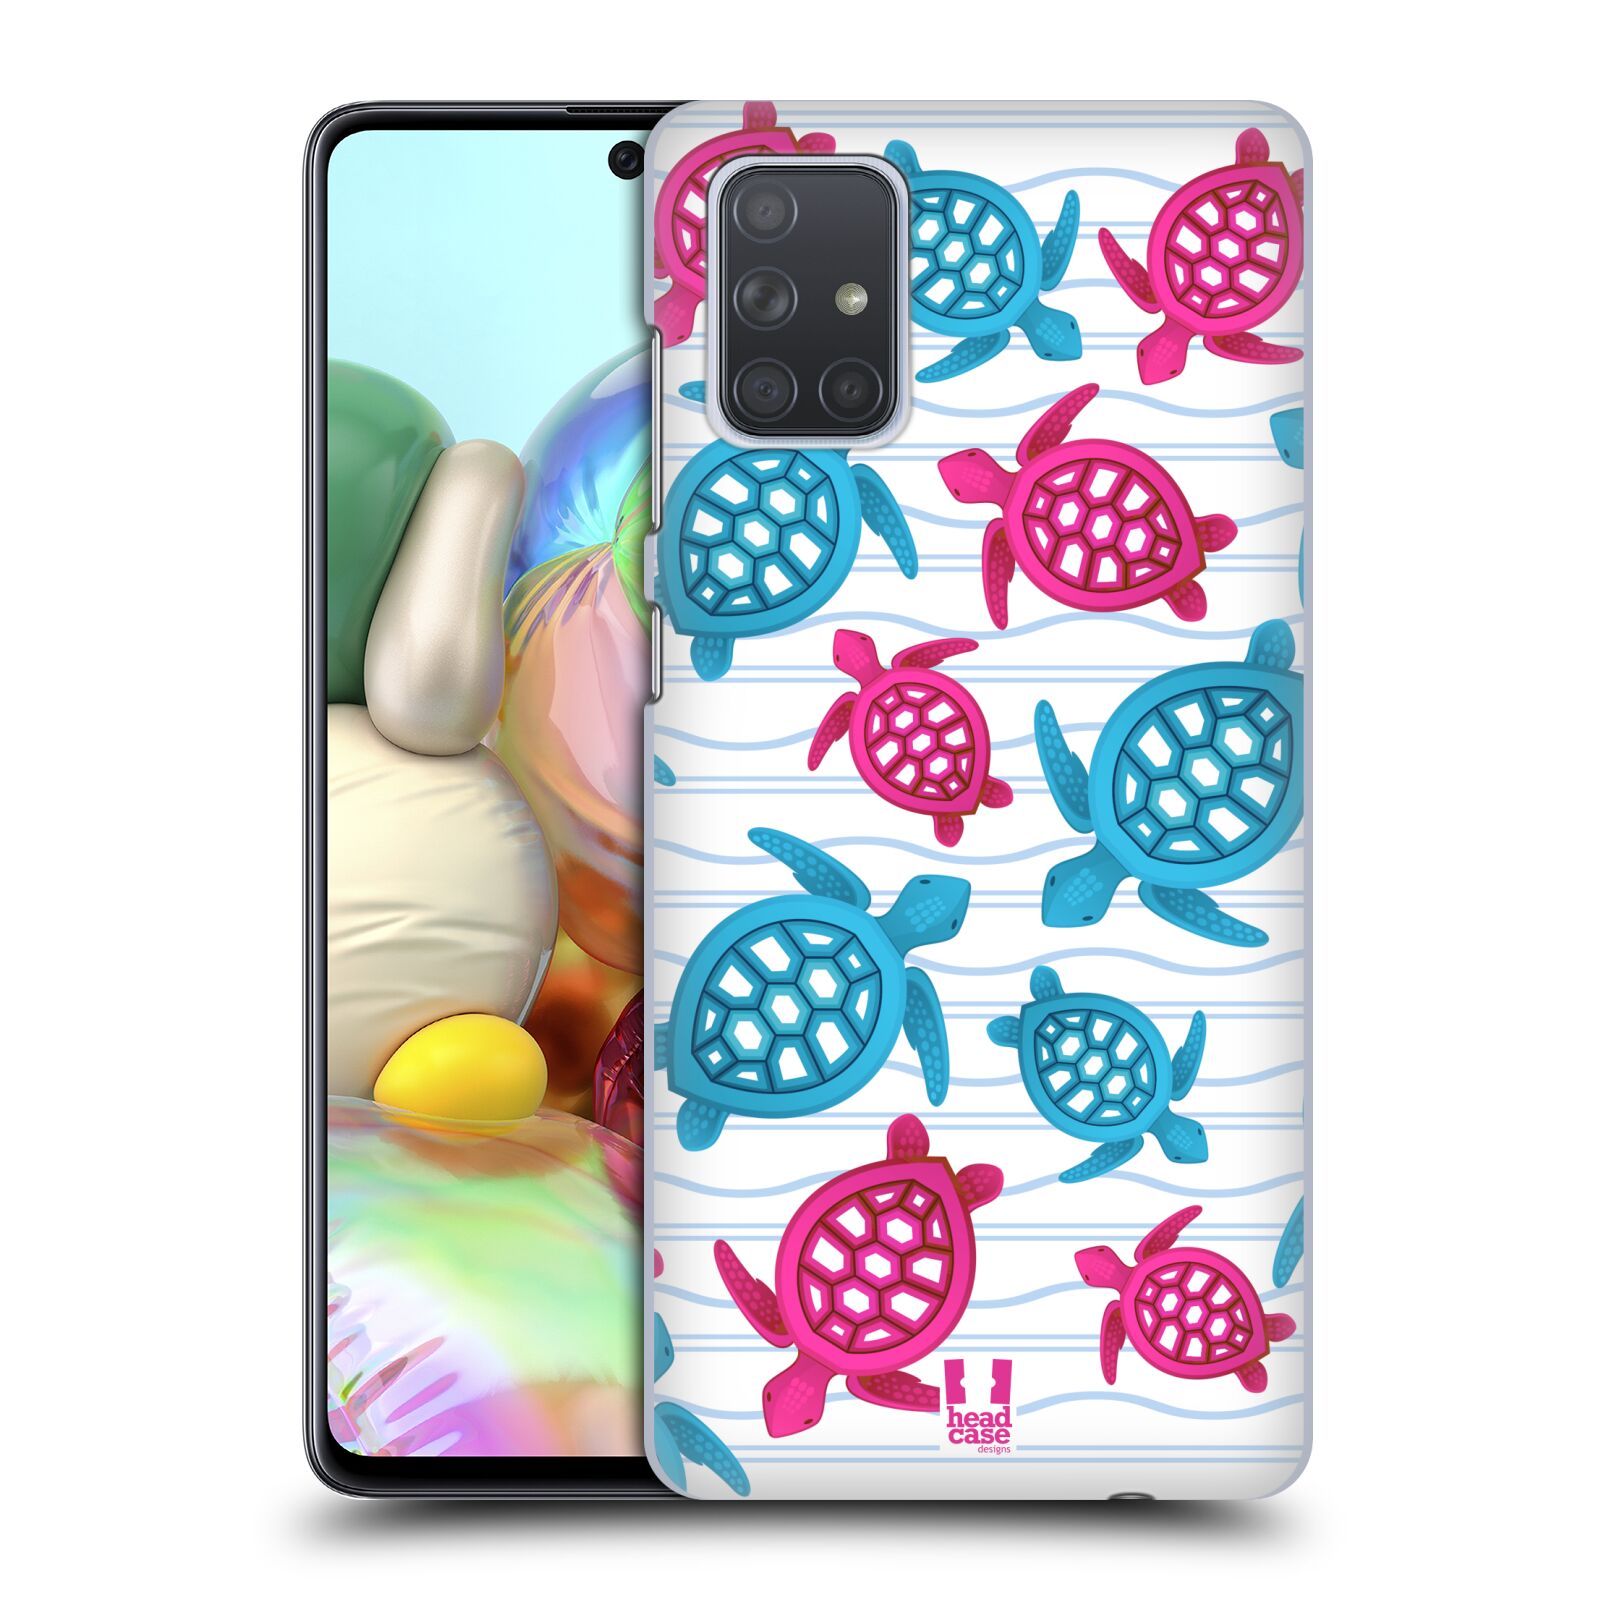 Zadní obal pro mobil Samsung Galaxy A71 - HEAD CASE - kreslený mořský vzor želvičky